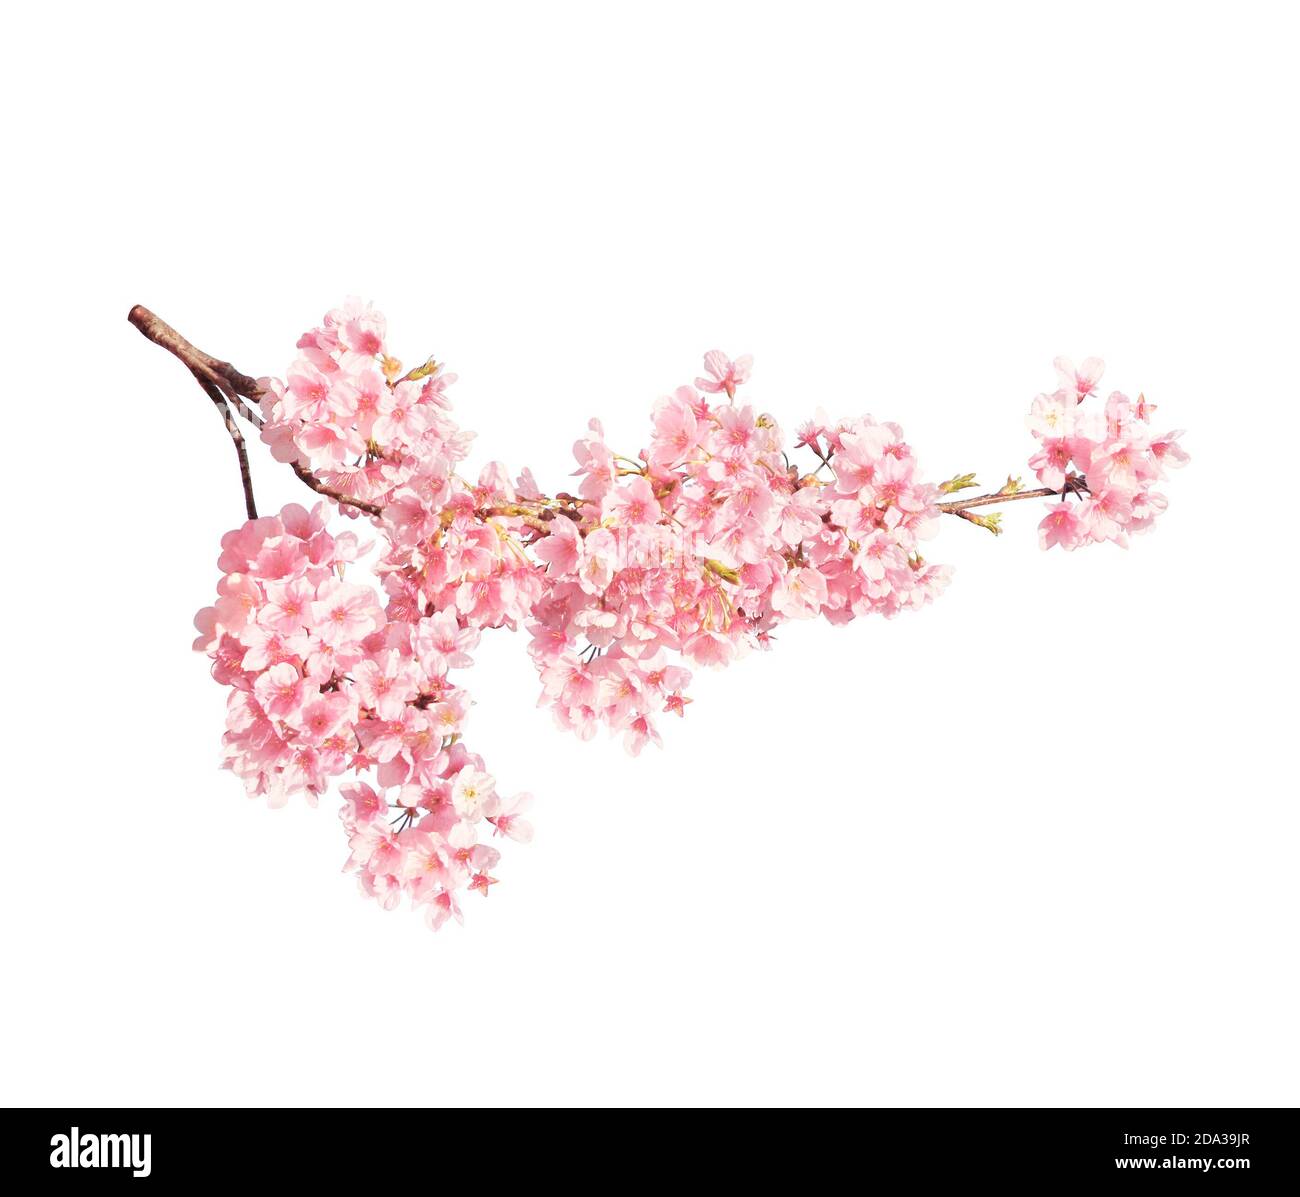 Branche de la sakura florissante avec des fleurs roses, Japon. Isolé sur fond blanc Banque D'Images